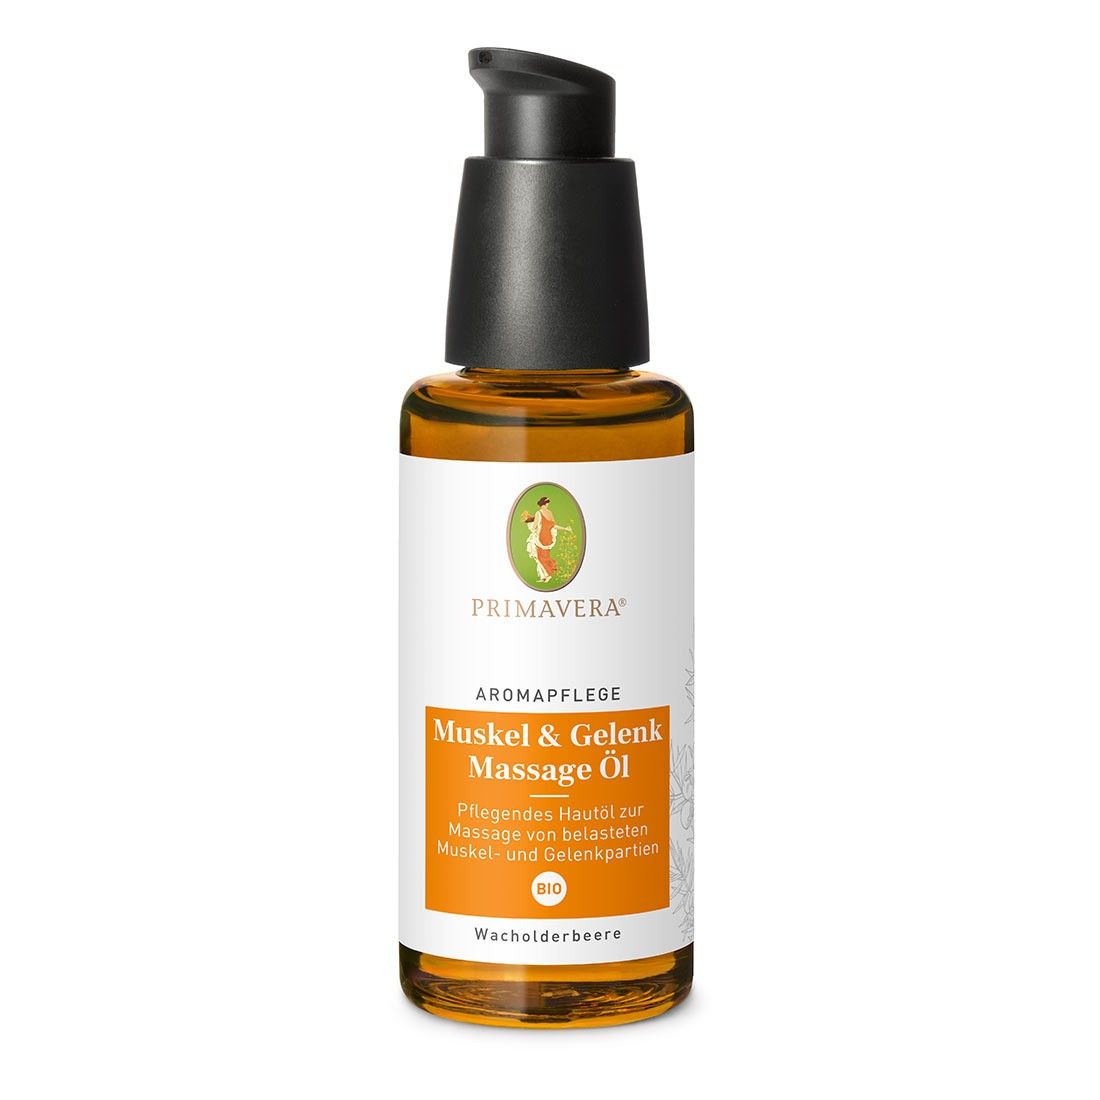 Aromapflege Muskel & Gelenk Massage Öl bio, 50ml